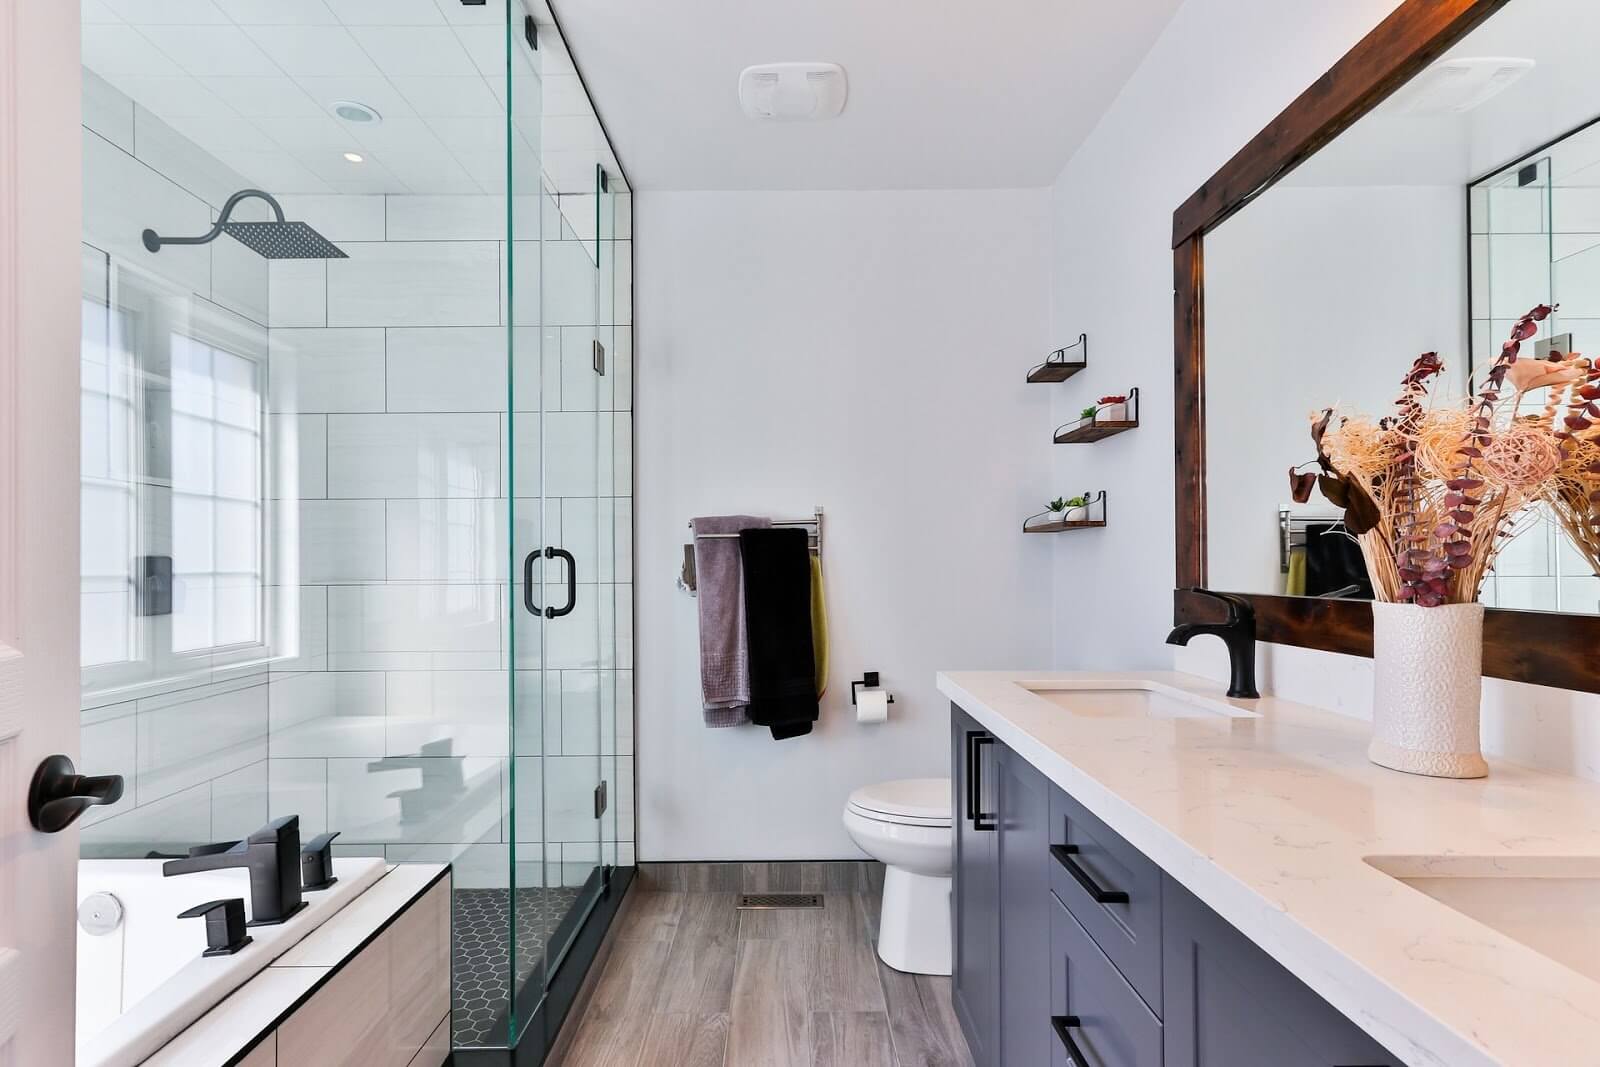 Should You DIY Your Bathroom Remodel?